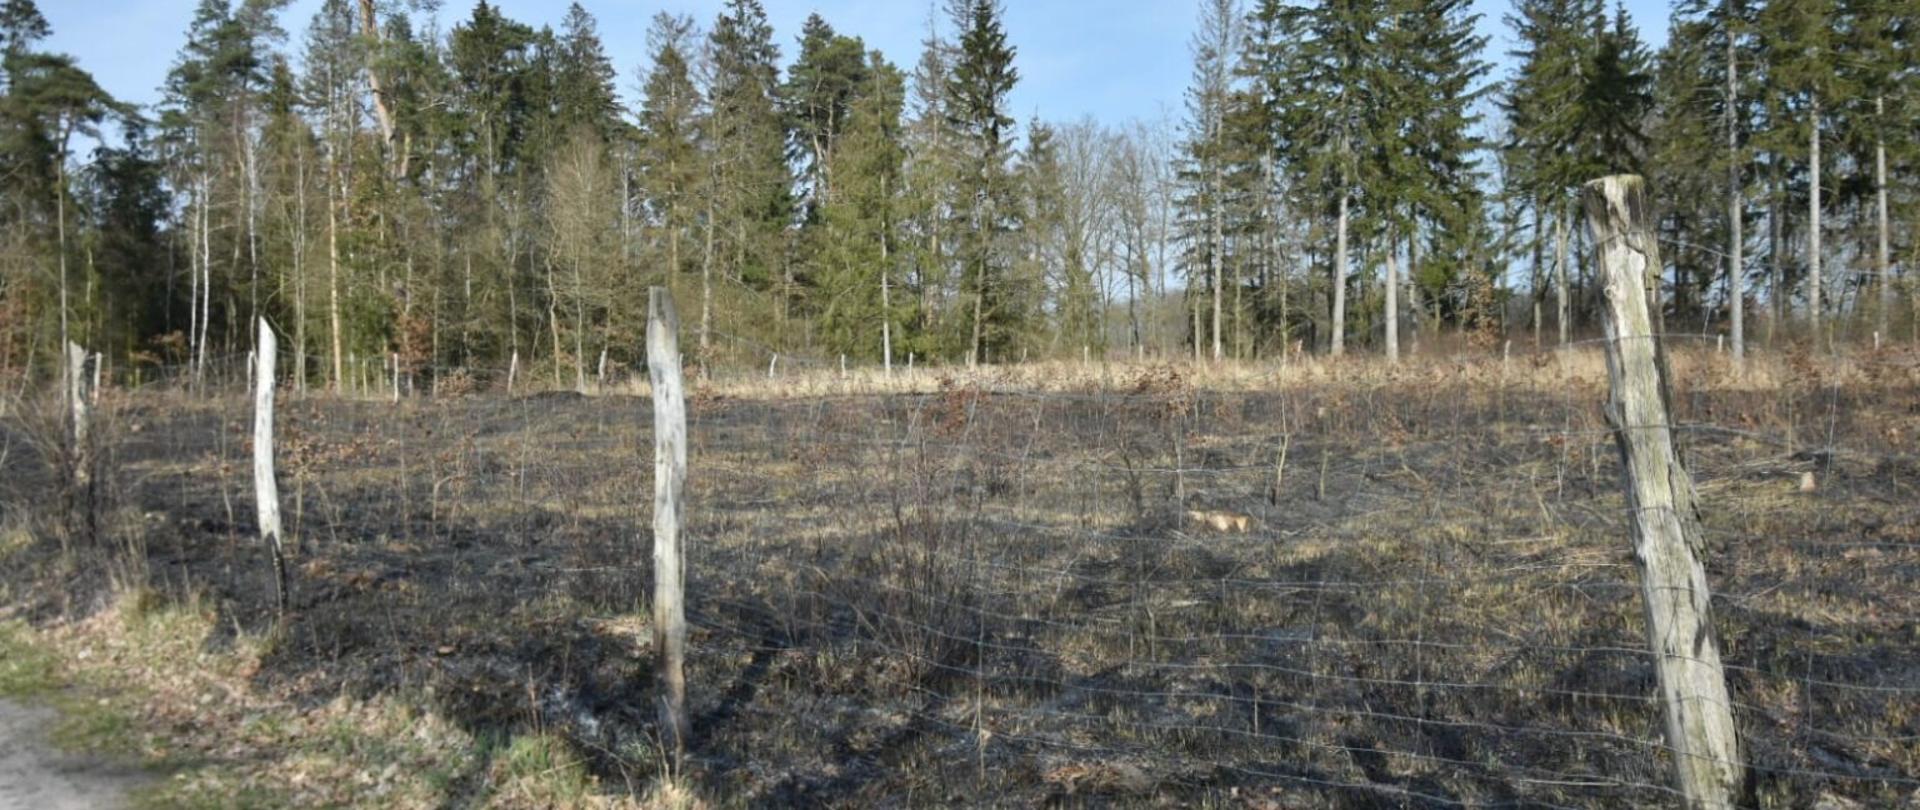 Zdjęcie przedstawia wypalony teren młodnika przy lesie.